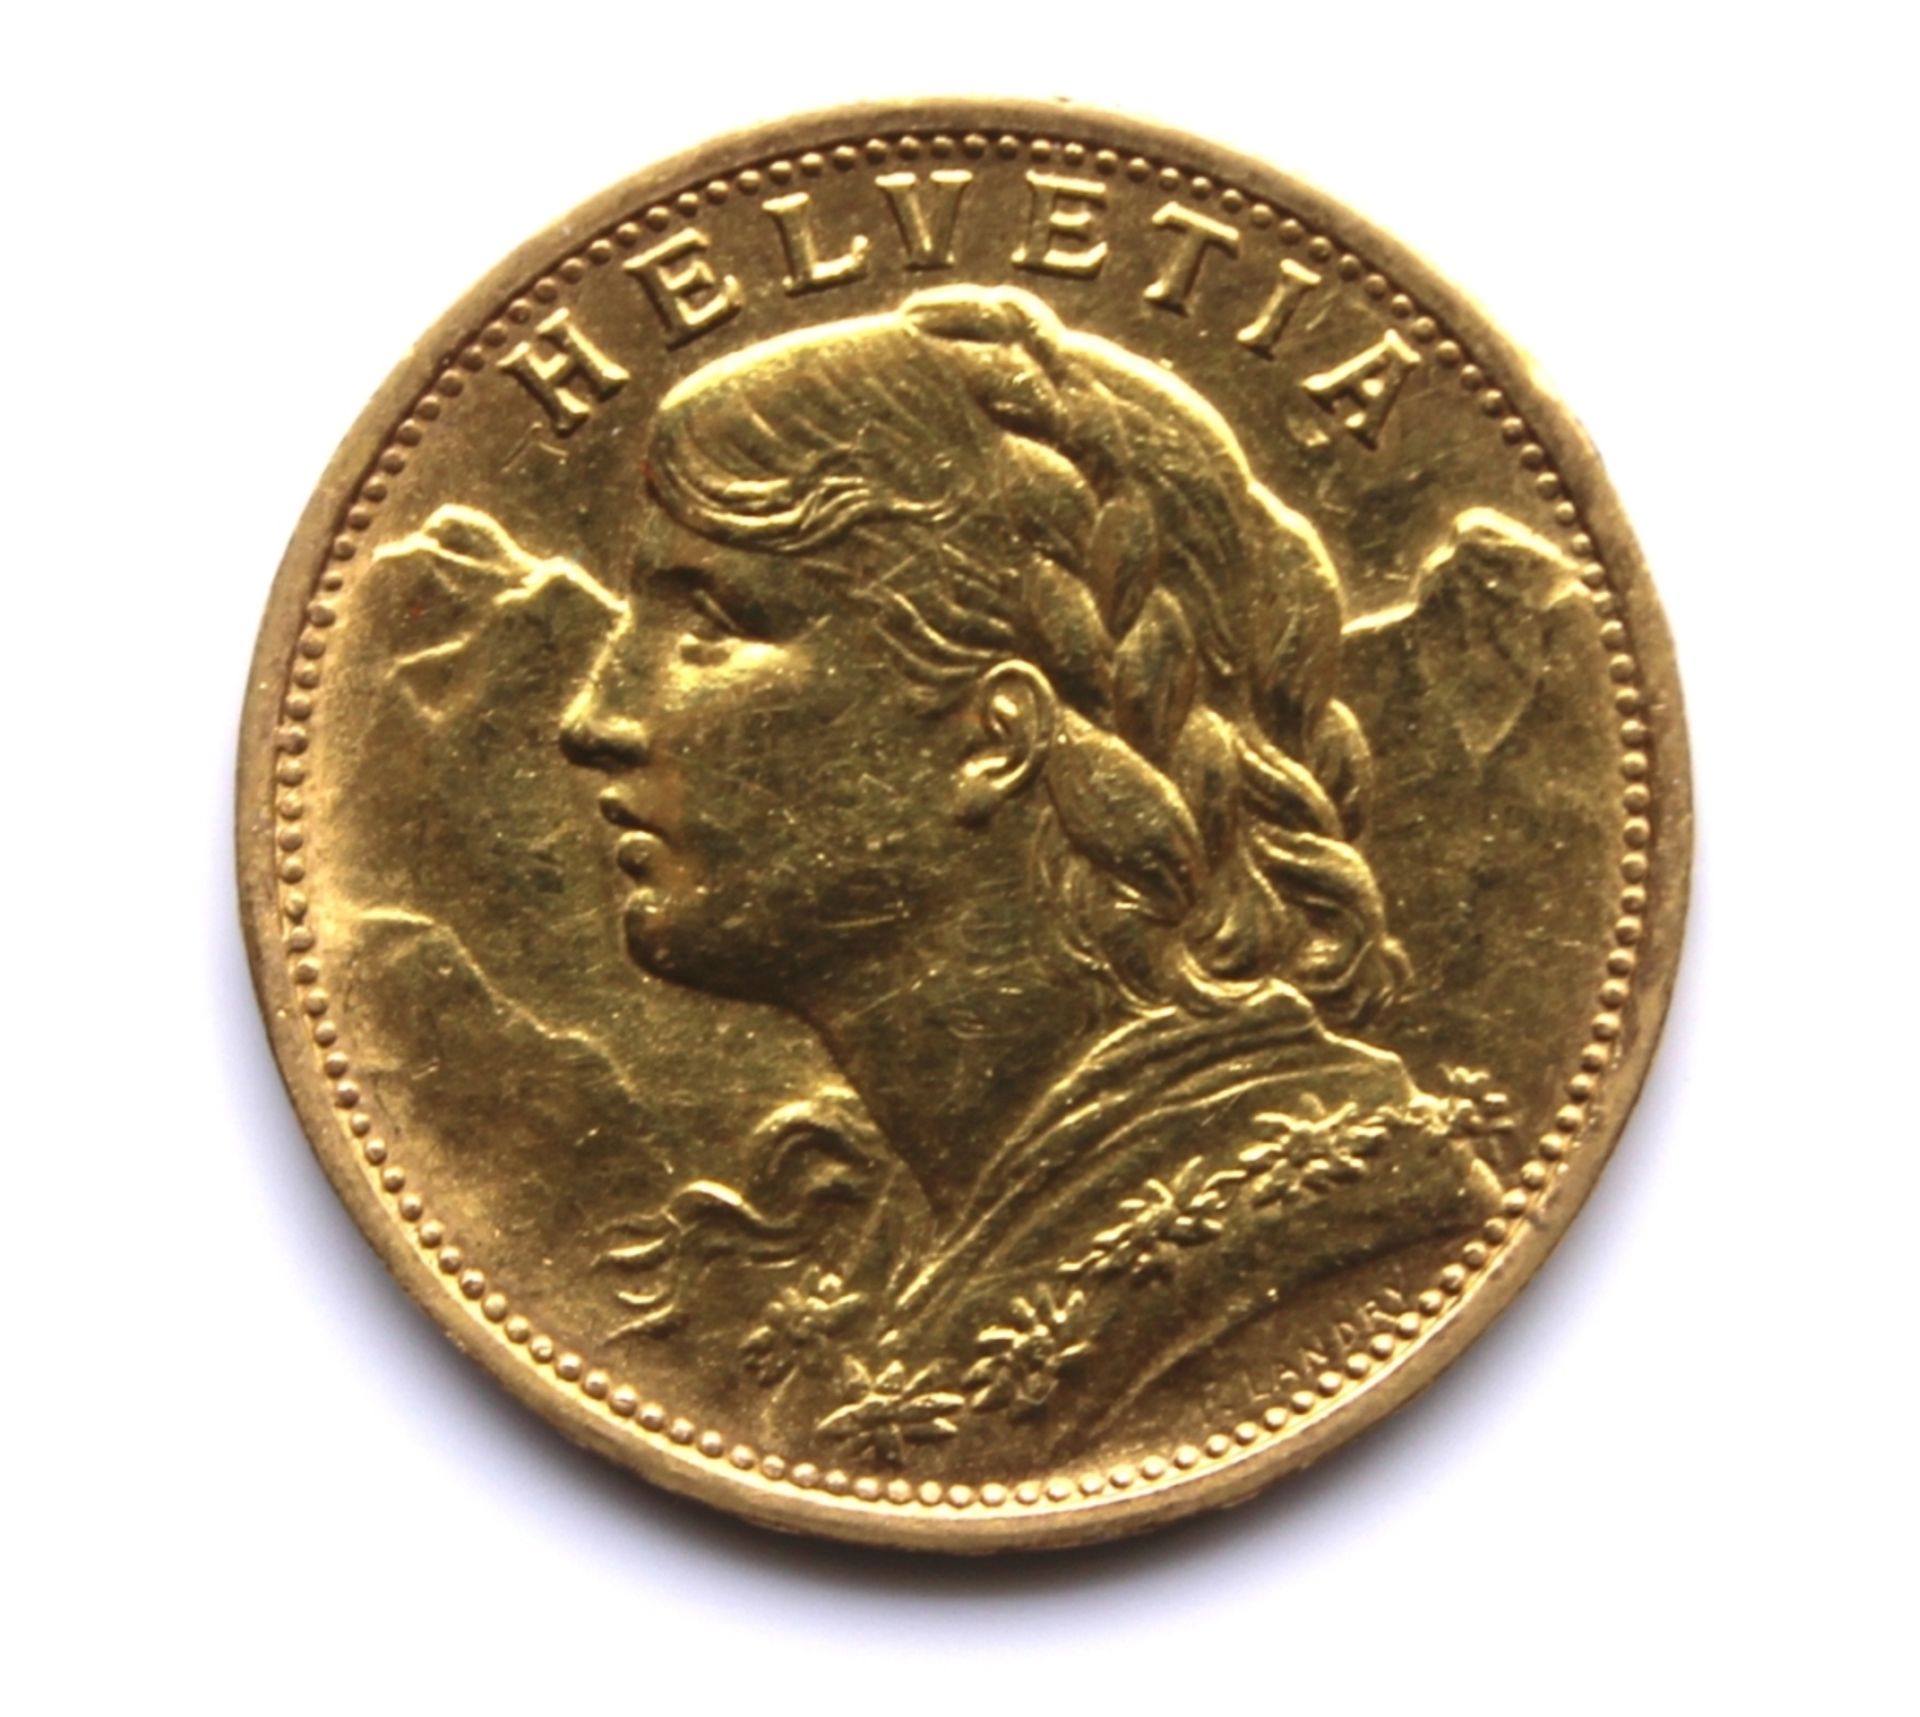 Goldmünze - Schweiz - 20 Franken sog. "Vreneli", 1935 B, Helvetia, d.= ca. 21 mm, ca. 6,45 Gramm